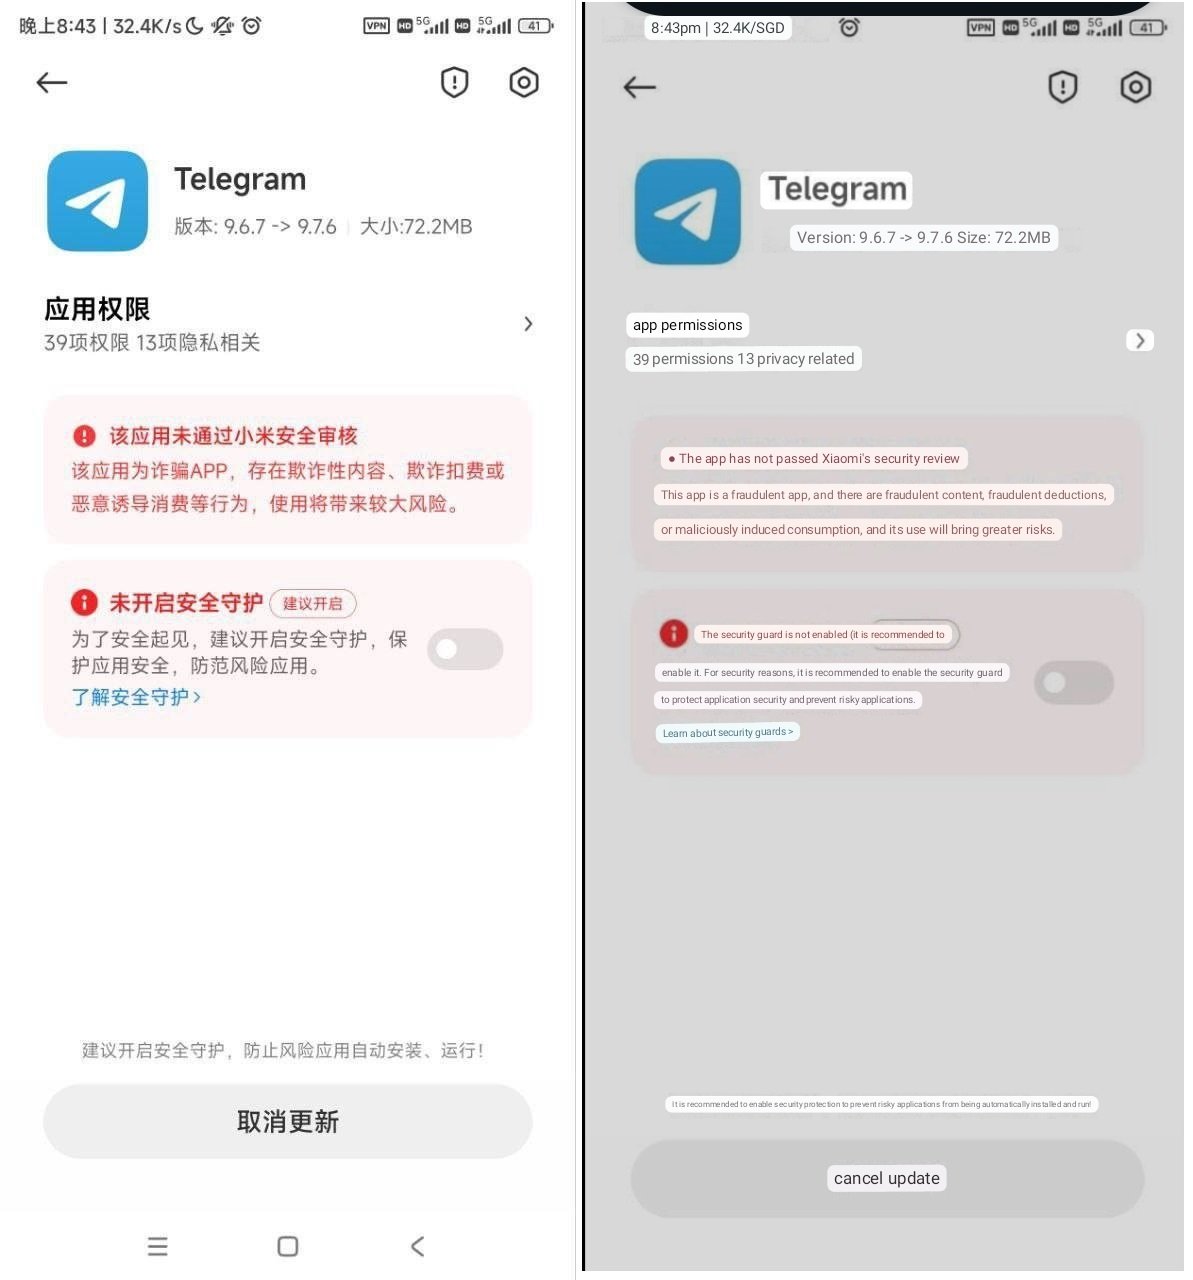 دلیل پرخطر دانستن تلگرام توسط MIUI شیائومی